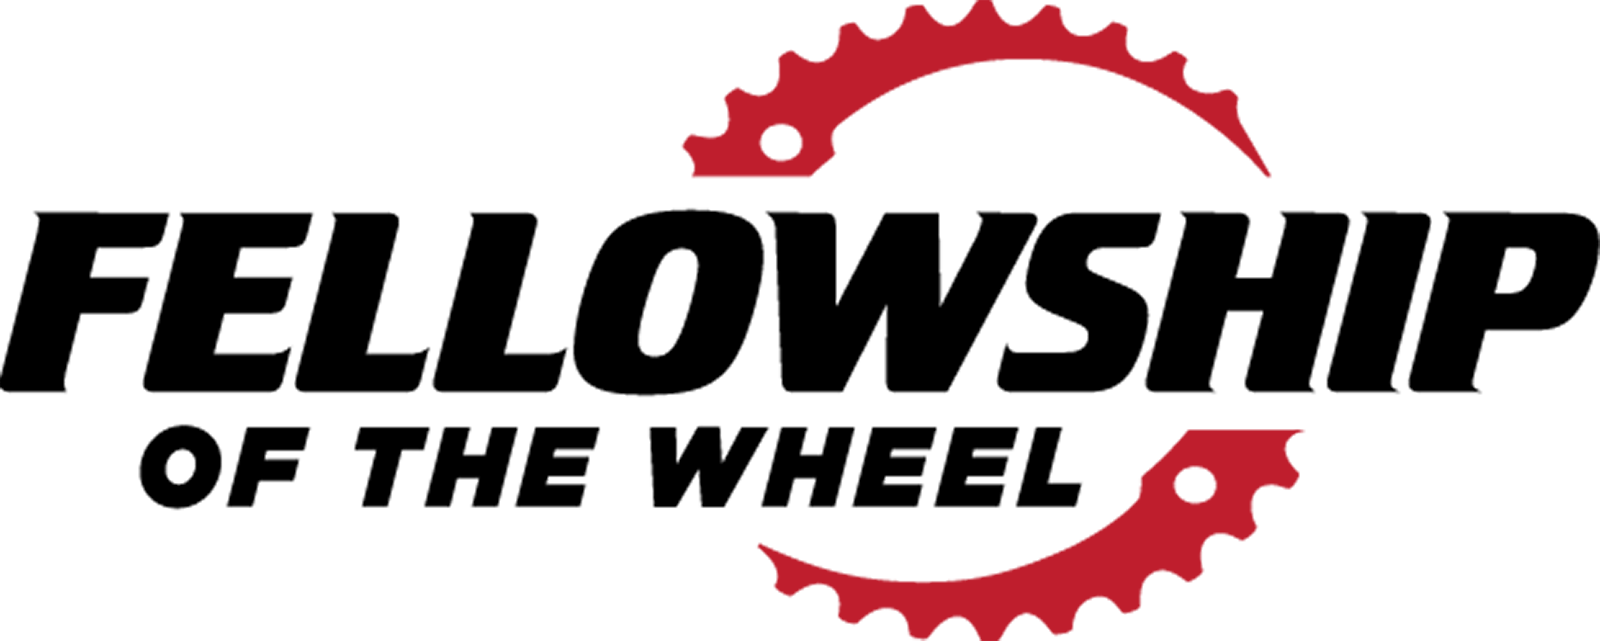 Fellowship of the Wheel logo